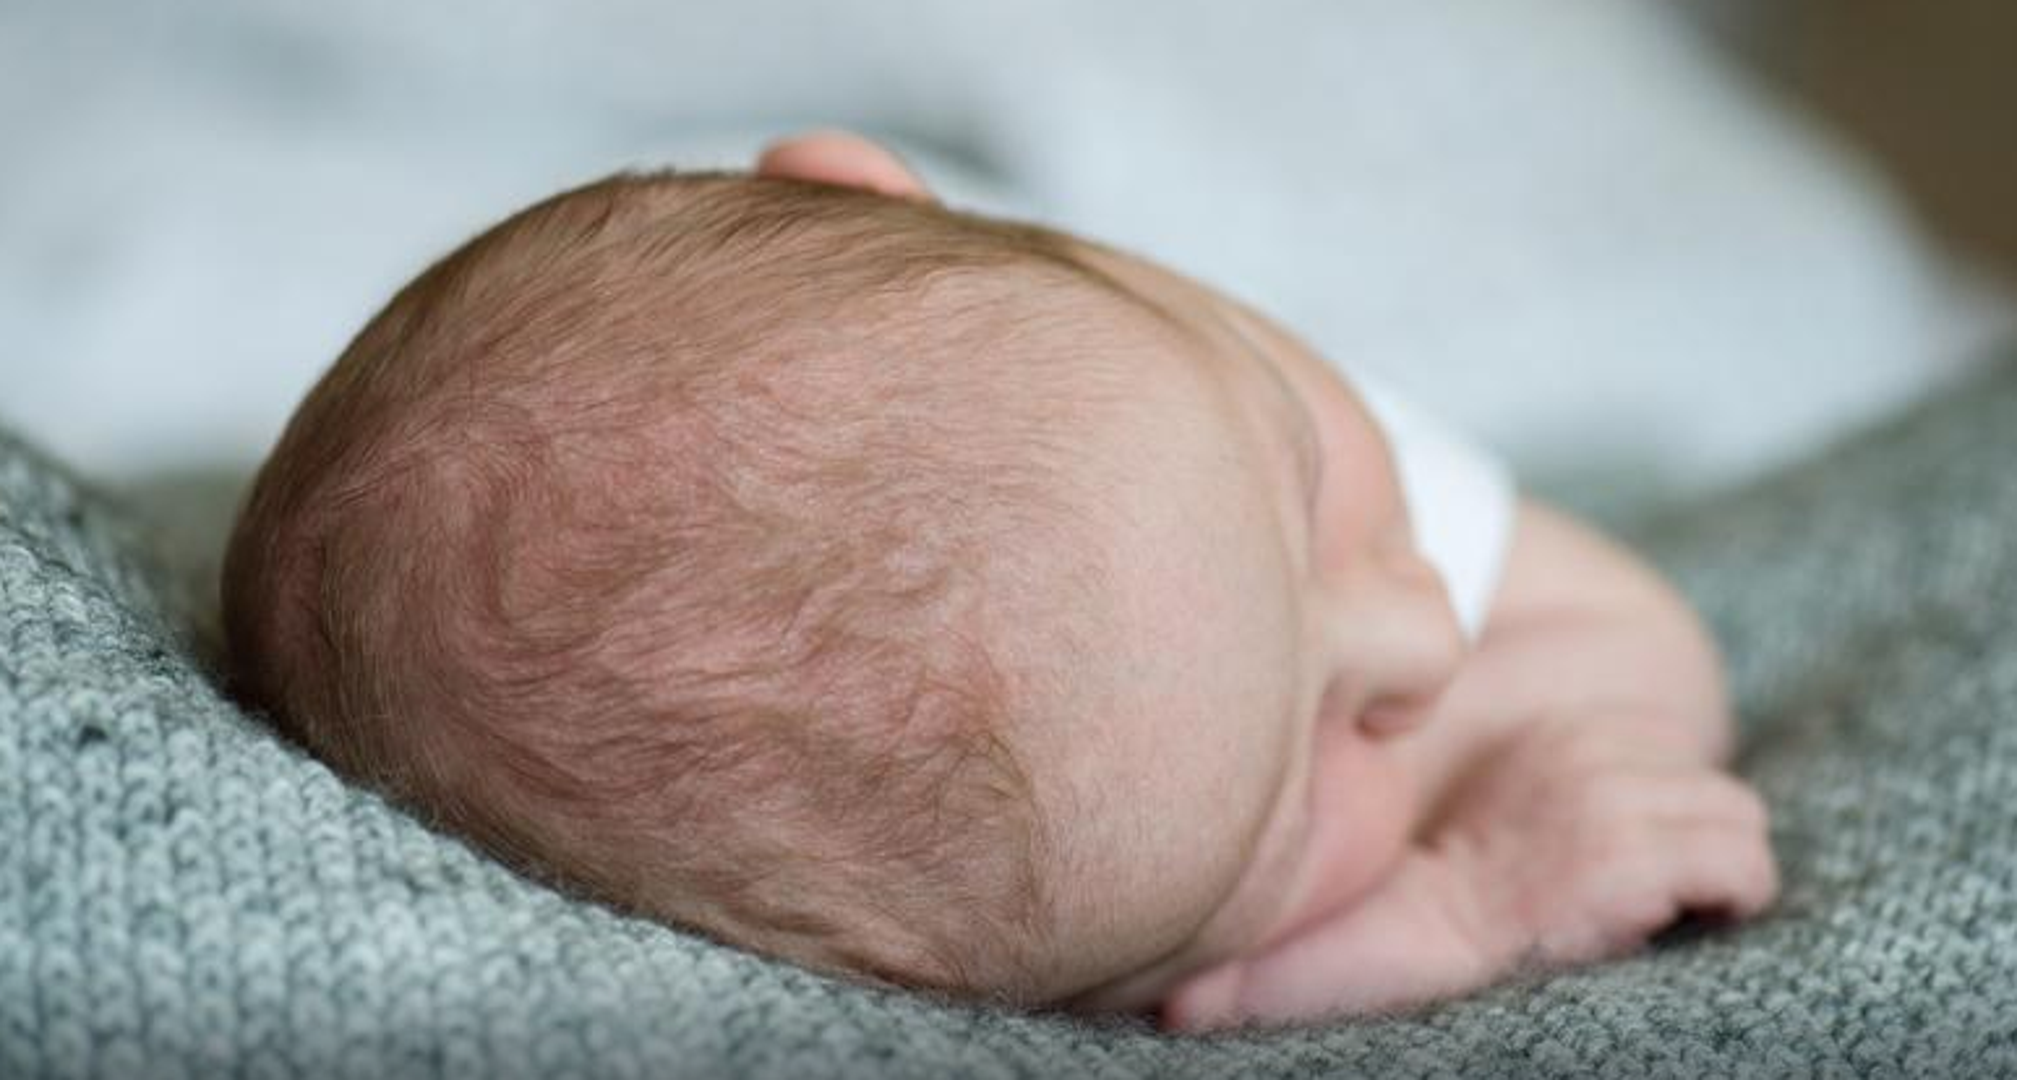 Ne brišete bebinu kožu dobro nakon kupanja? Svakako pazite da bebinu kožu nježno posušite do kraja kako bebi nebi bilo hladno, ali i ostaci vode mogu uzrokovati razvoj gljivica, posebice na dijelovima pokrivenim pelenom. 